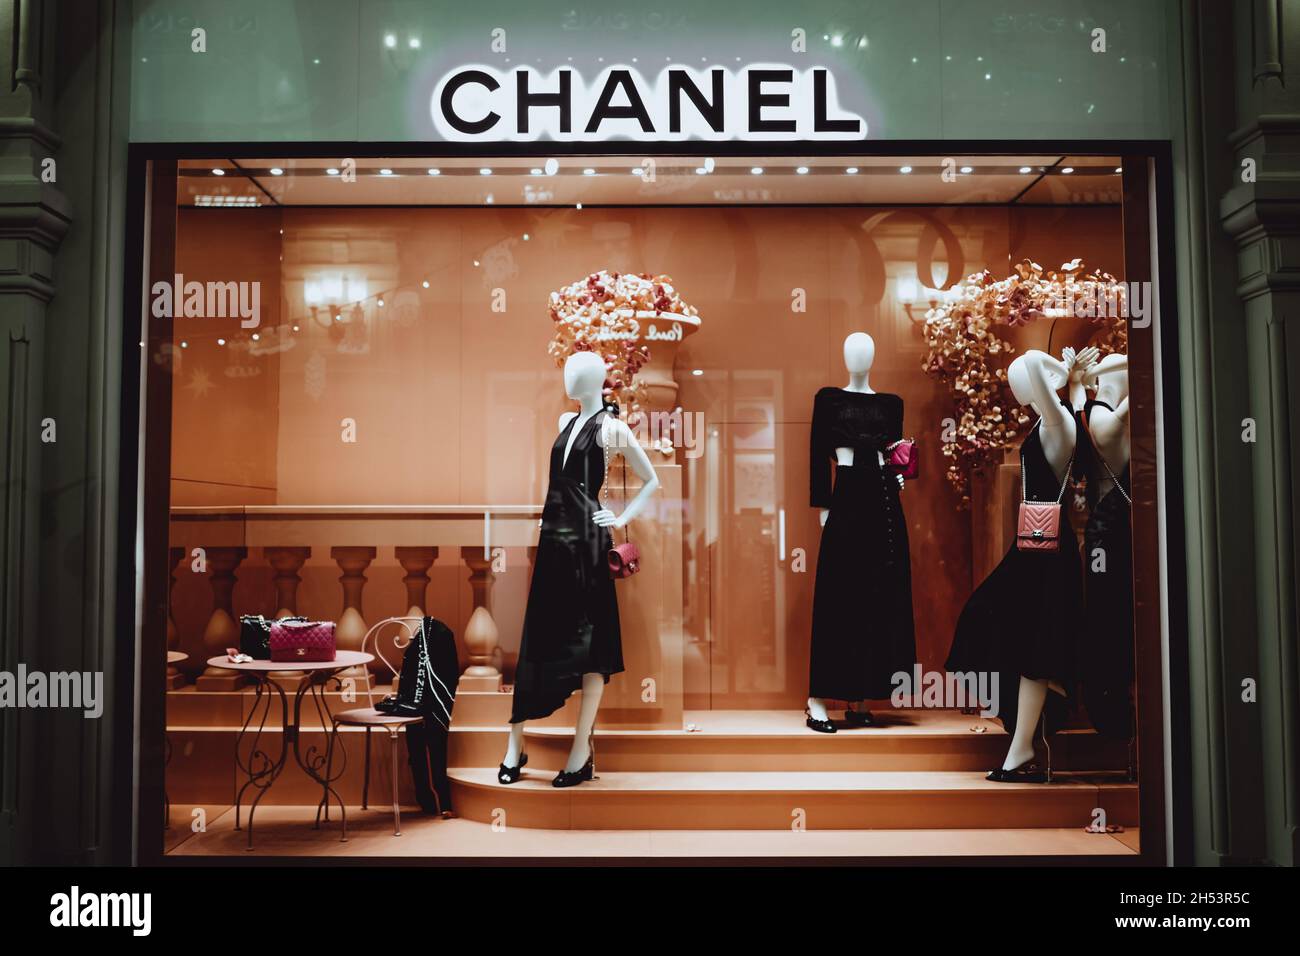 Manichini eleganti femminili in una vetrina con borse Chanel. Chanel è un marchio di alta moda fondato da Coco Chanel nel 1909 Foto Stock